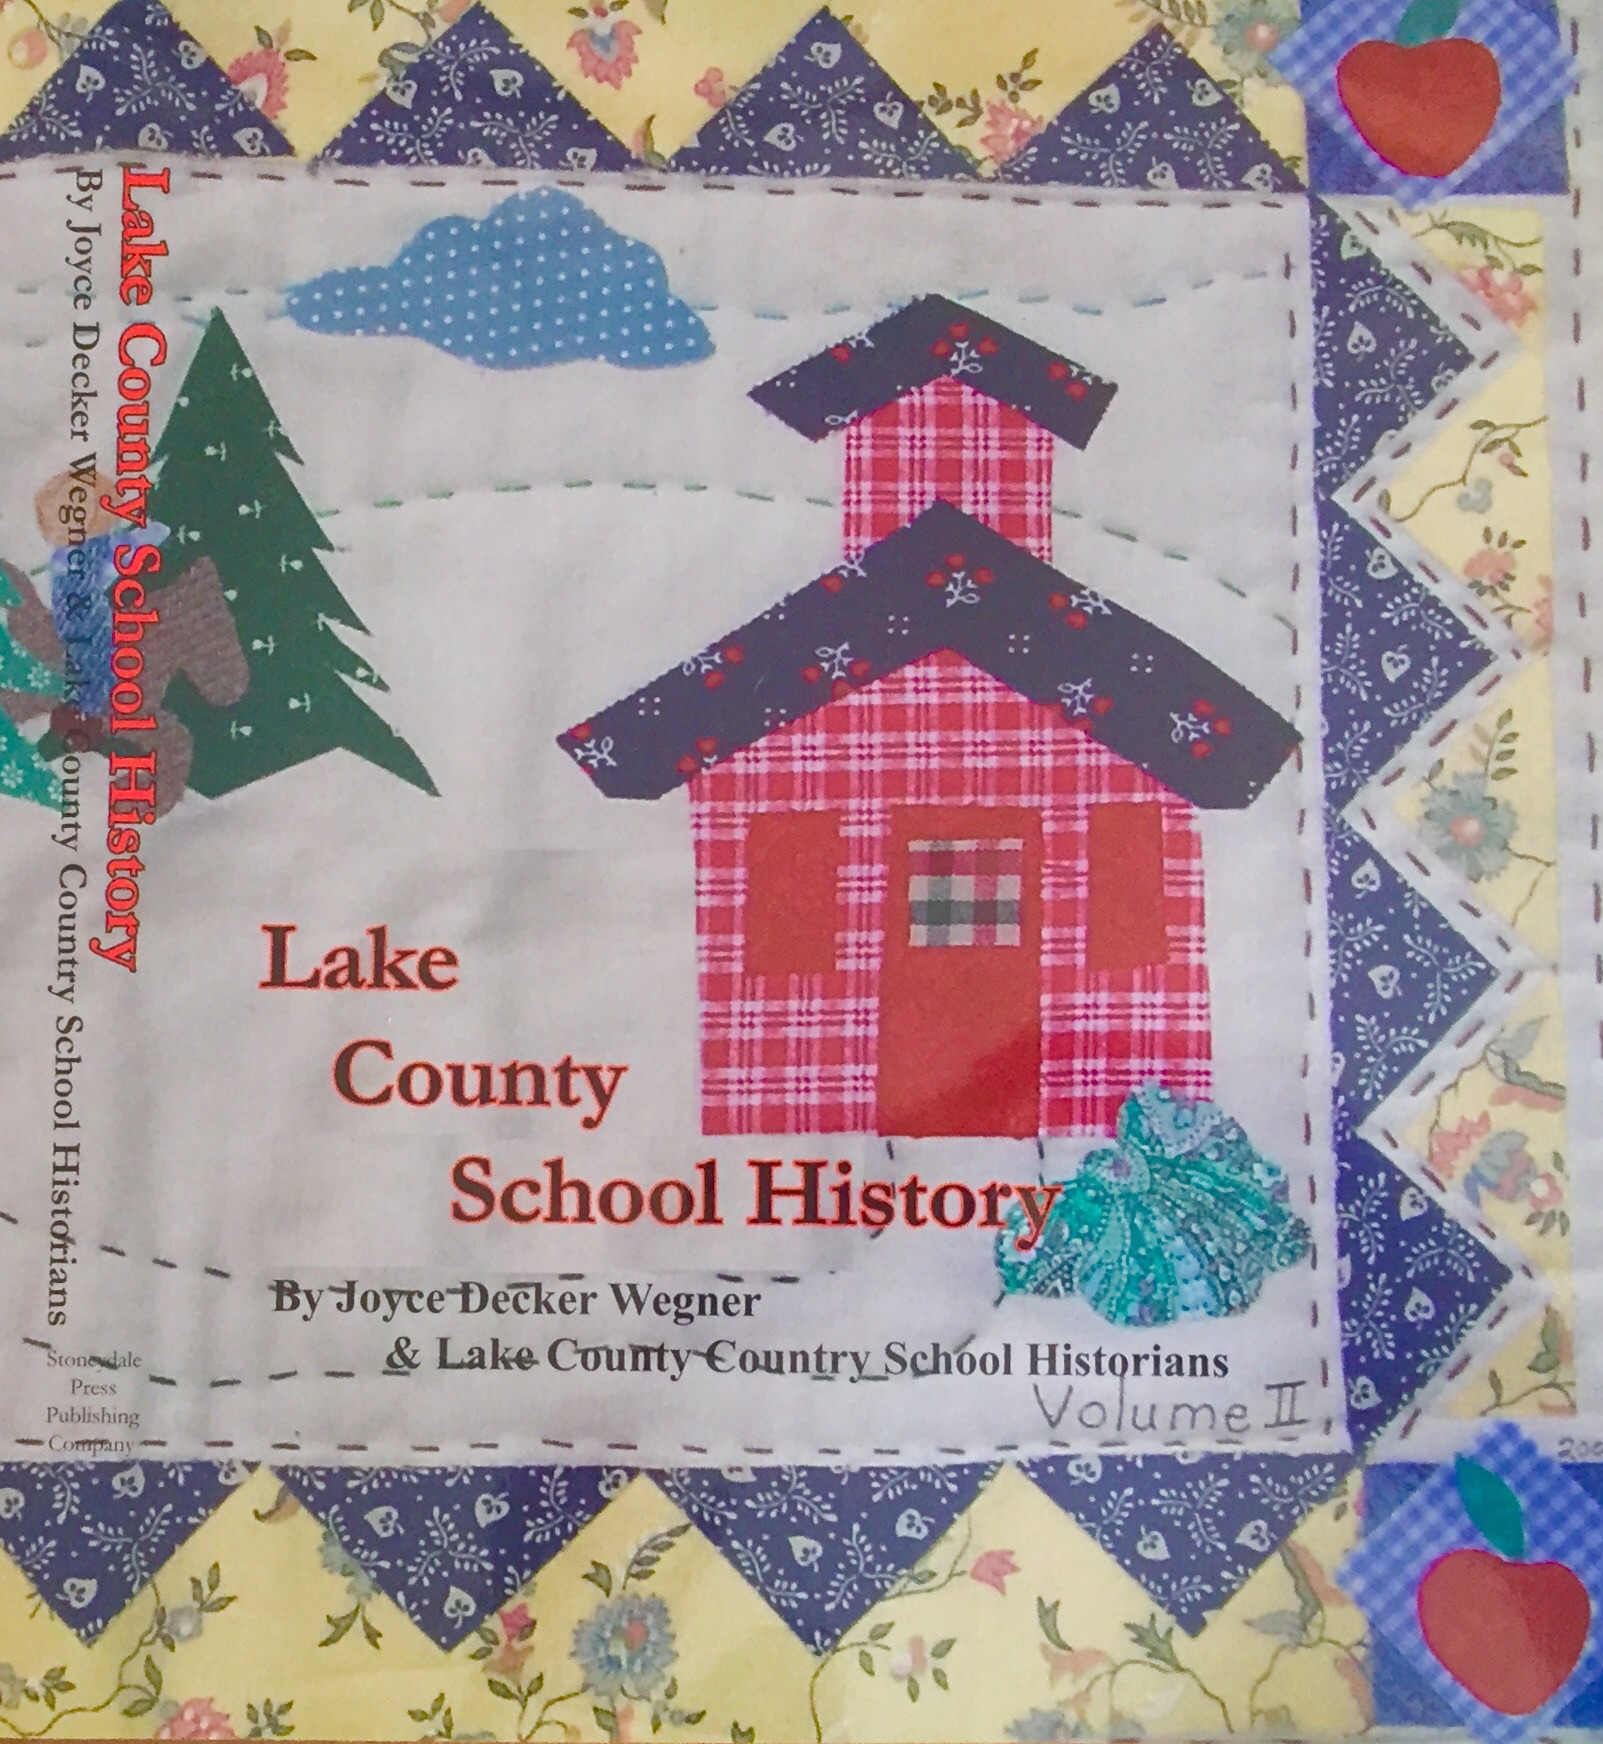 Lake County School History, Volume II